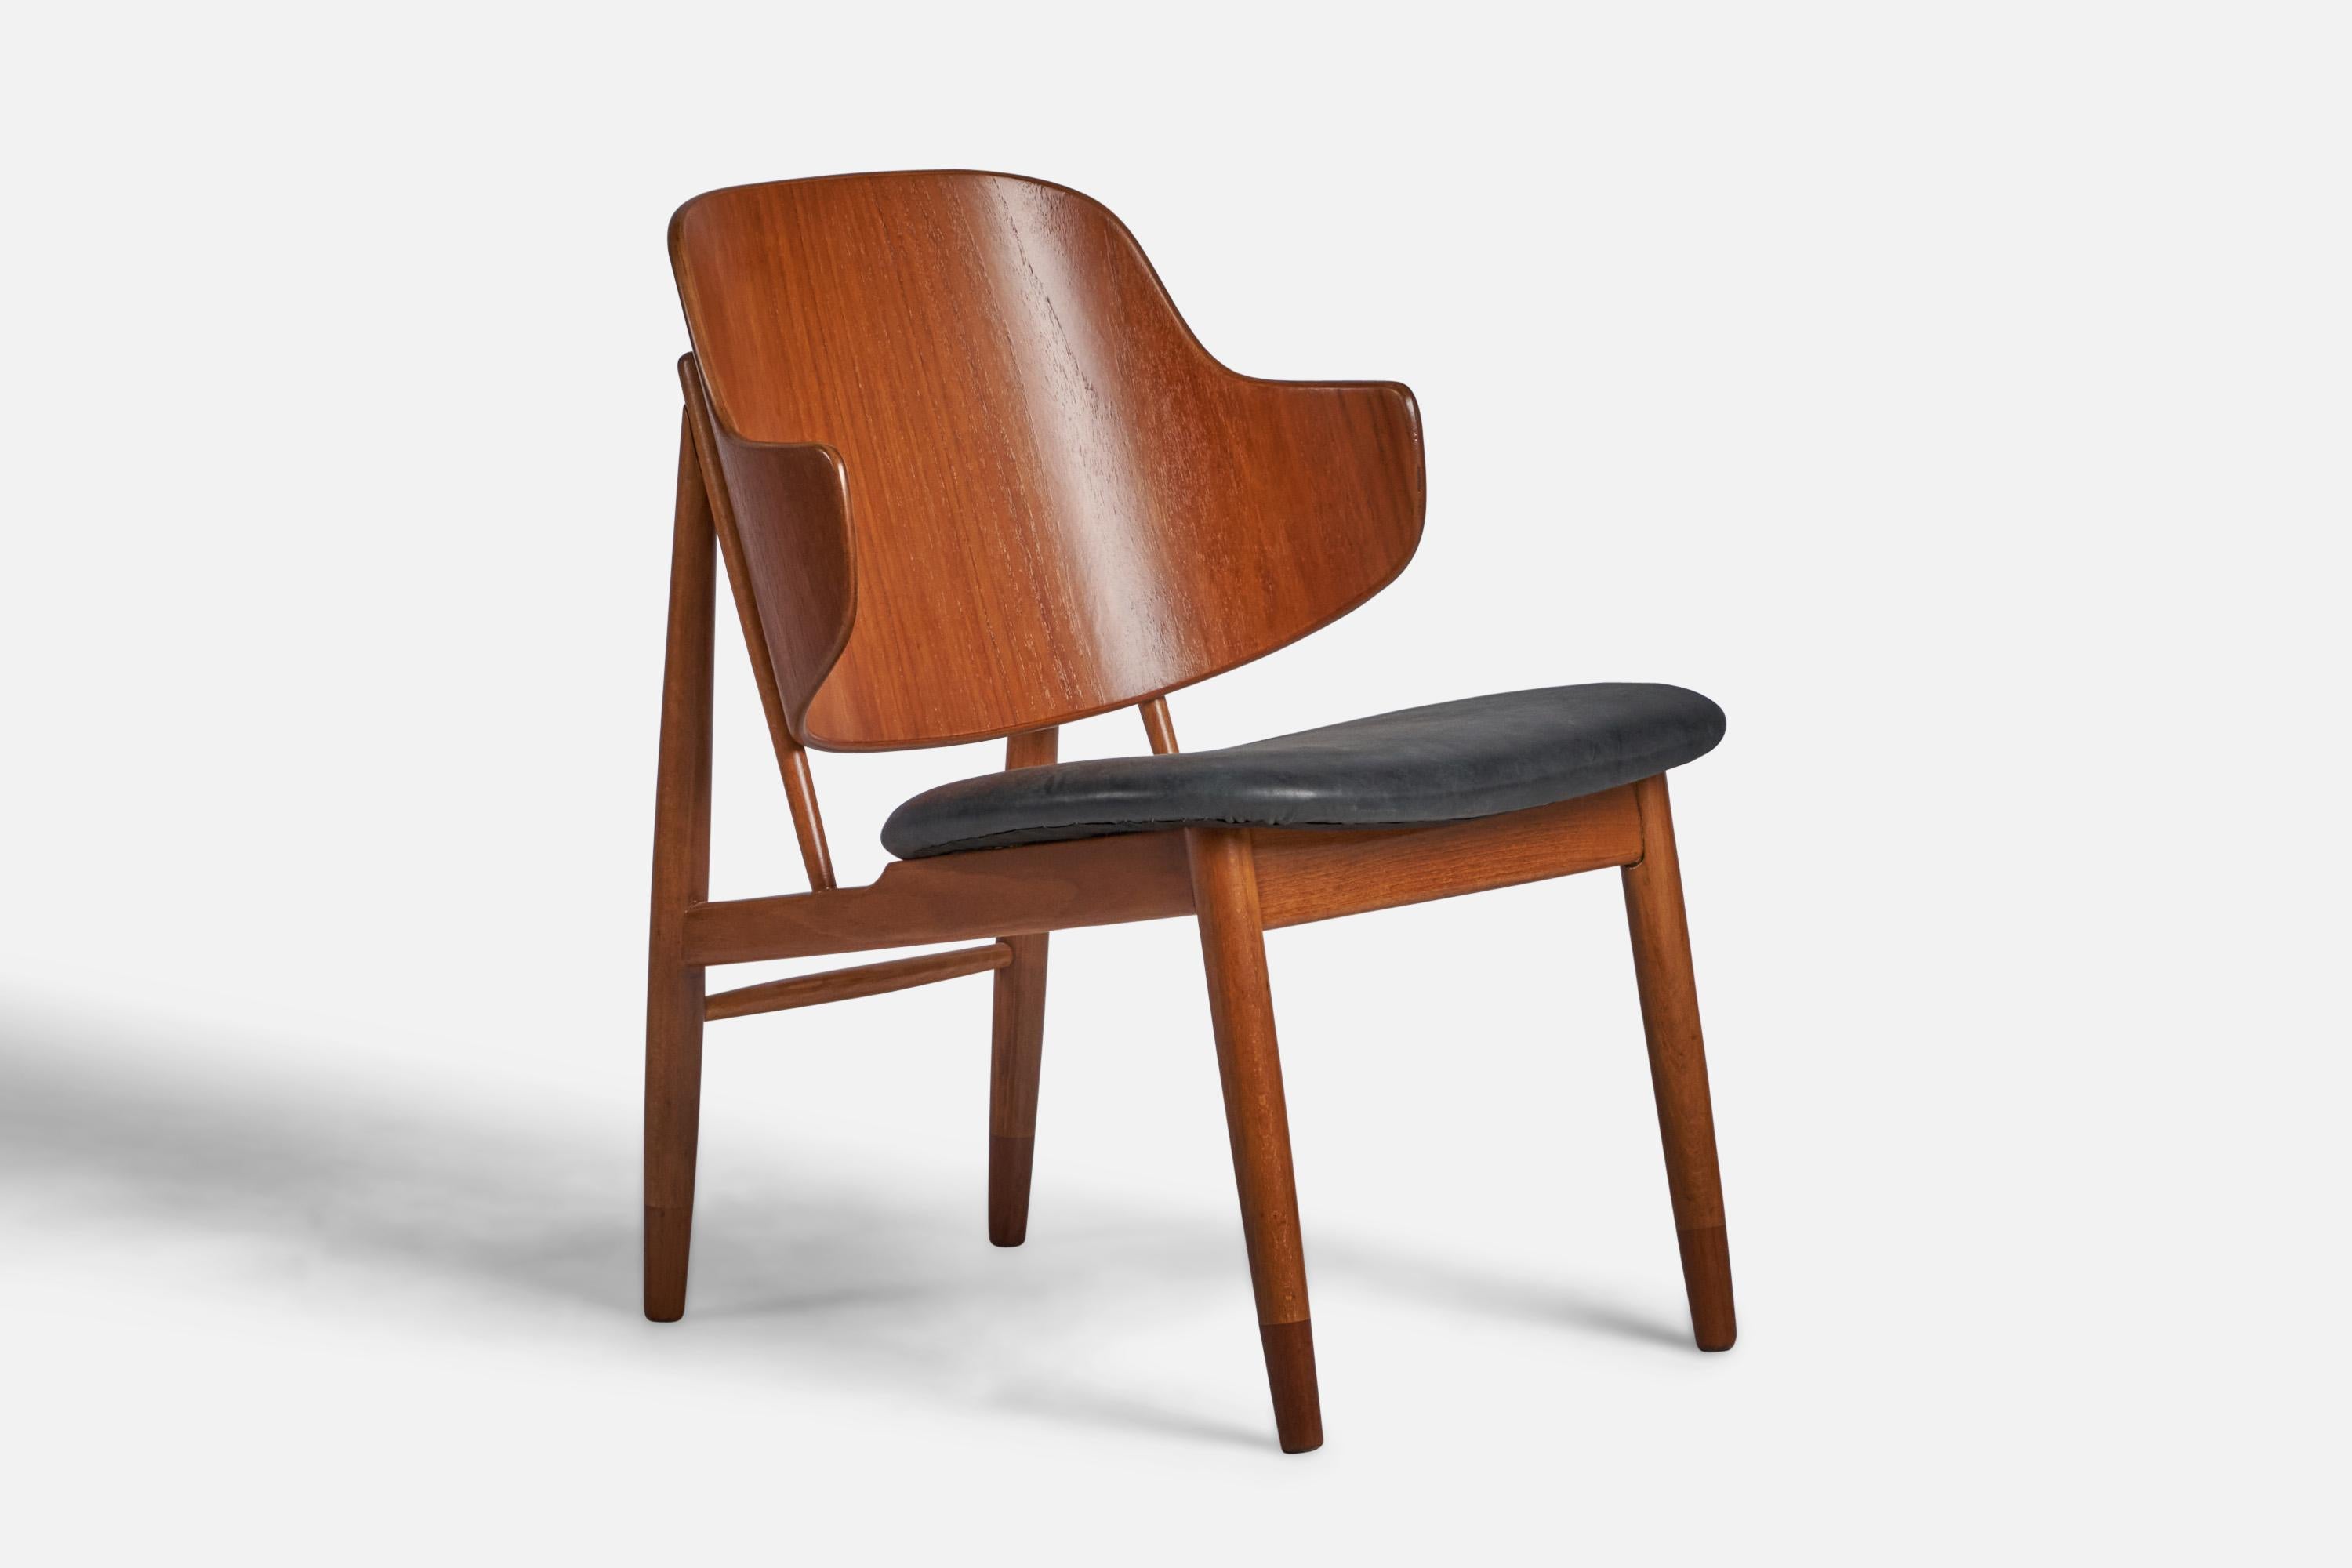 Sessel aus Teakholz, Buche und schwarzem Leder, entworfen von Ib Kofod-Larsen und hergestellt von Christensen & Larsen, Dänemark, 1950er Jahre.
Sitzhöhe: 16.5